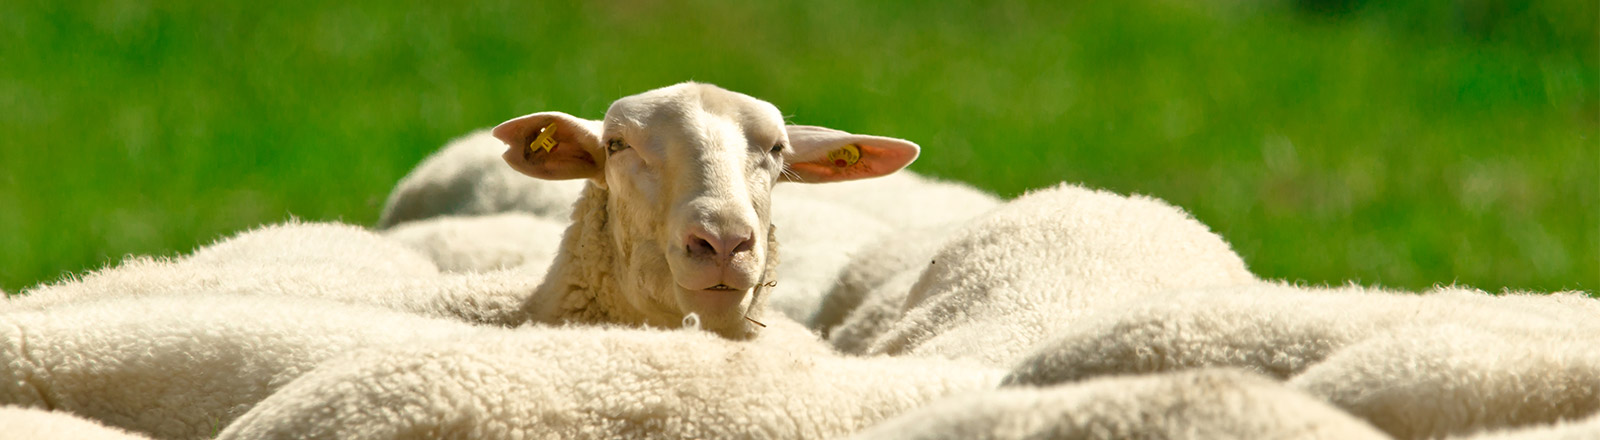 Pourquoi est-ce que les moutons aiment le chewing-gum ?